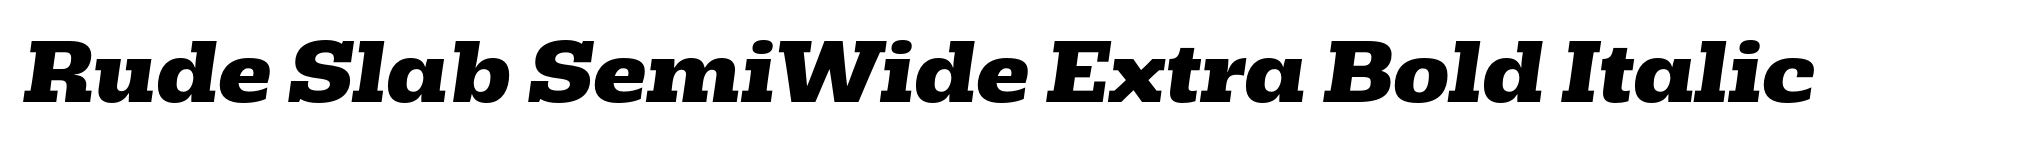 Rude Slab SemiWide Extra Bold Italic image